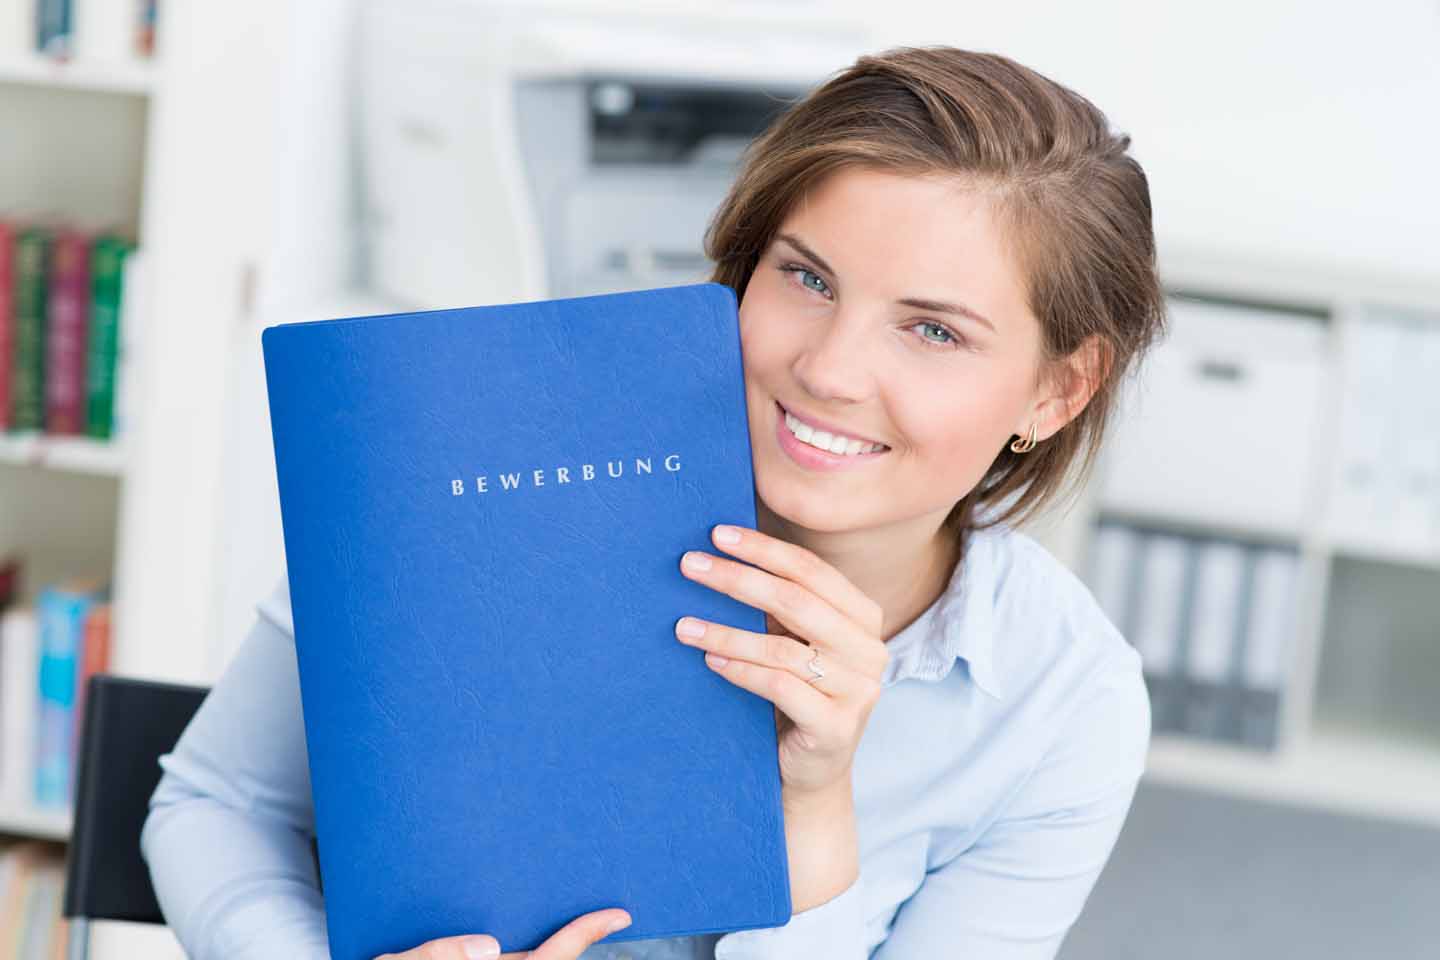 Eine eine junge Frau zeigt auf eine blaue Bewerbungsmappe.